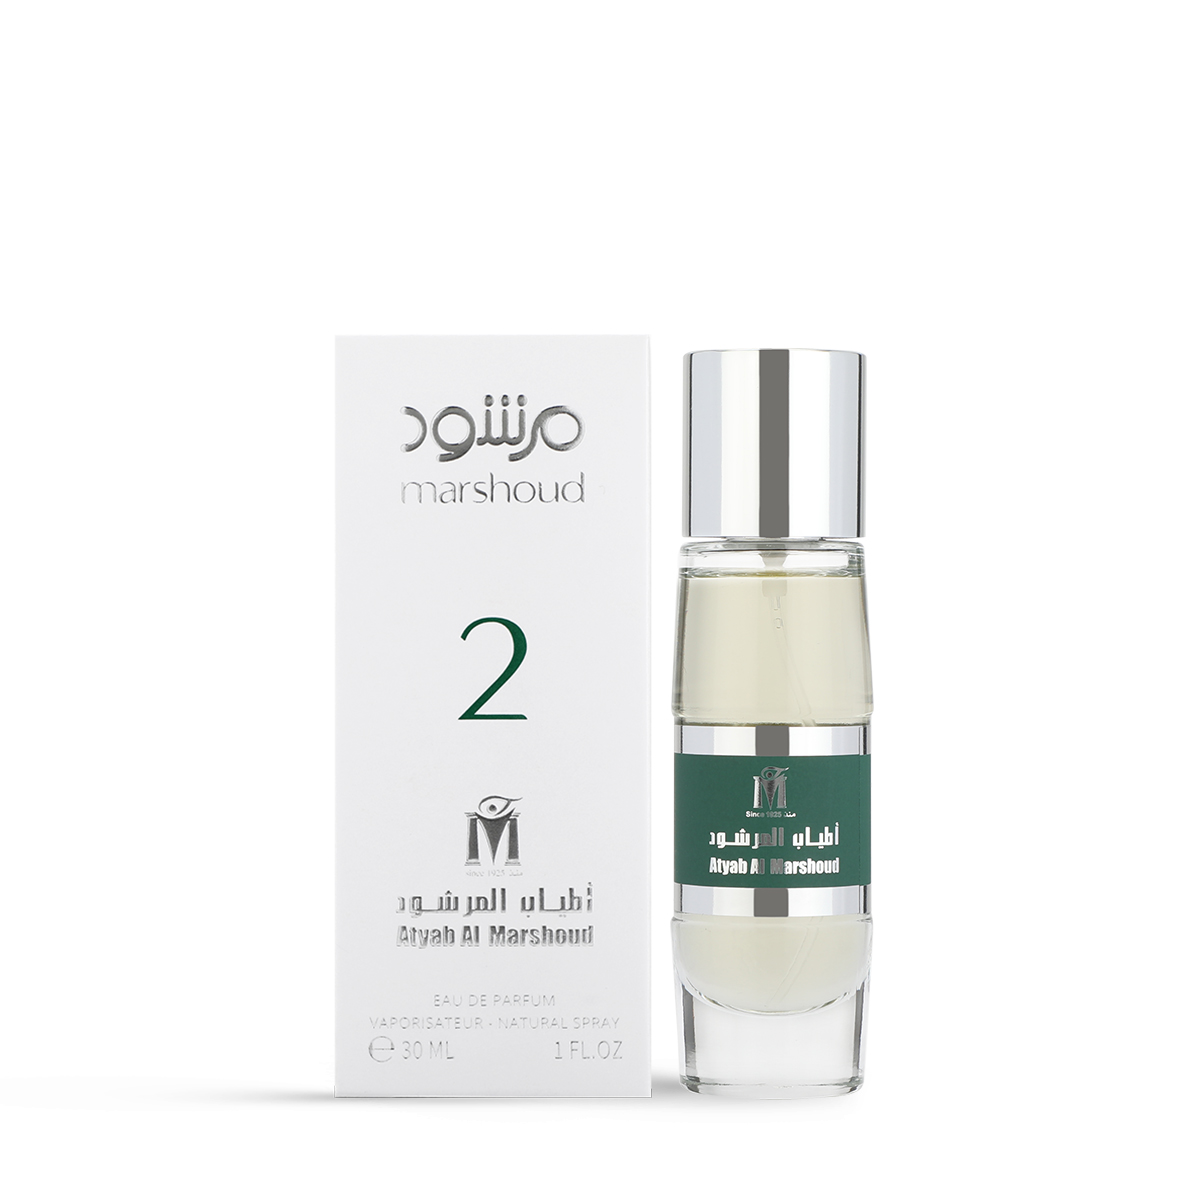 Boutiqaat: Marshoud No 4 Hair Mist by Atyab Al Marshoud for Women in Oman